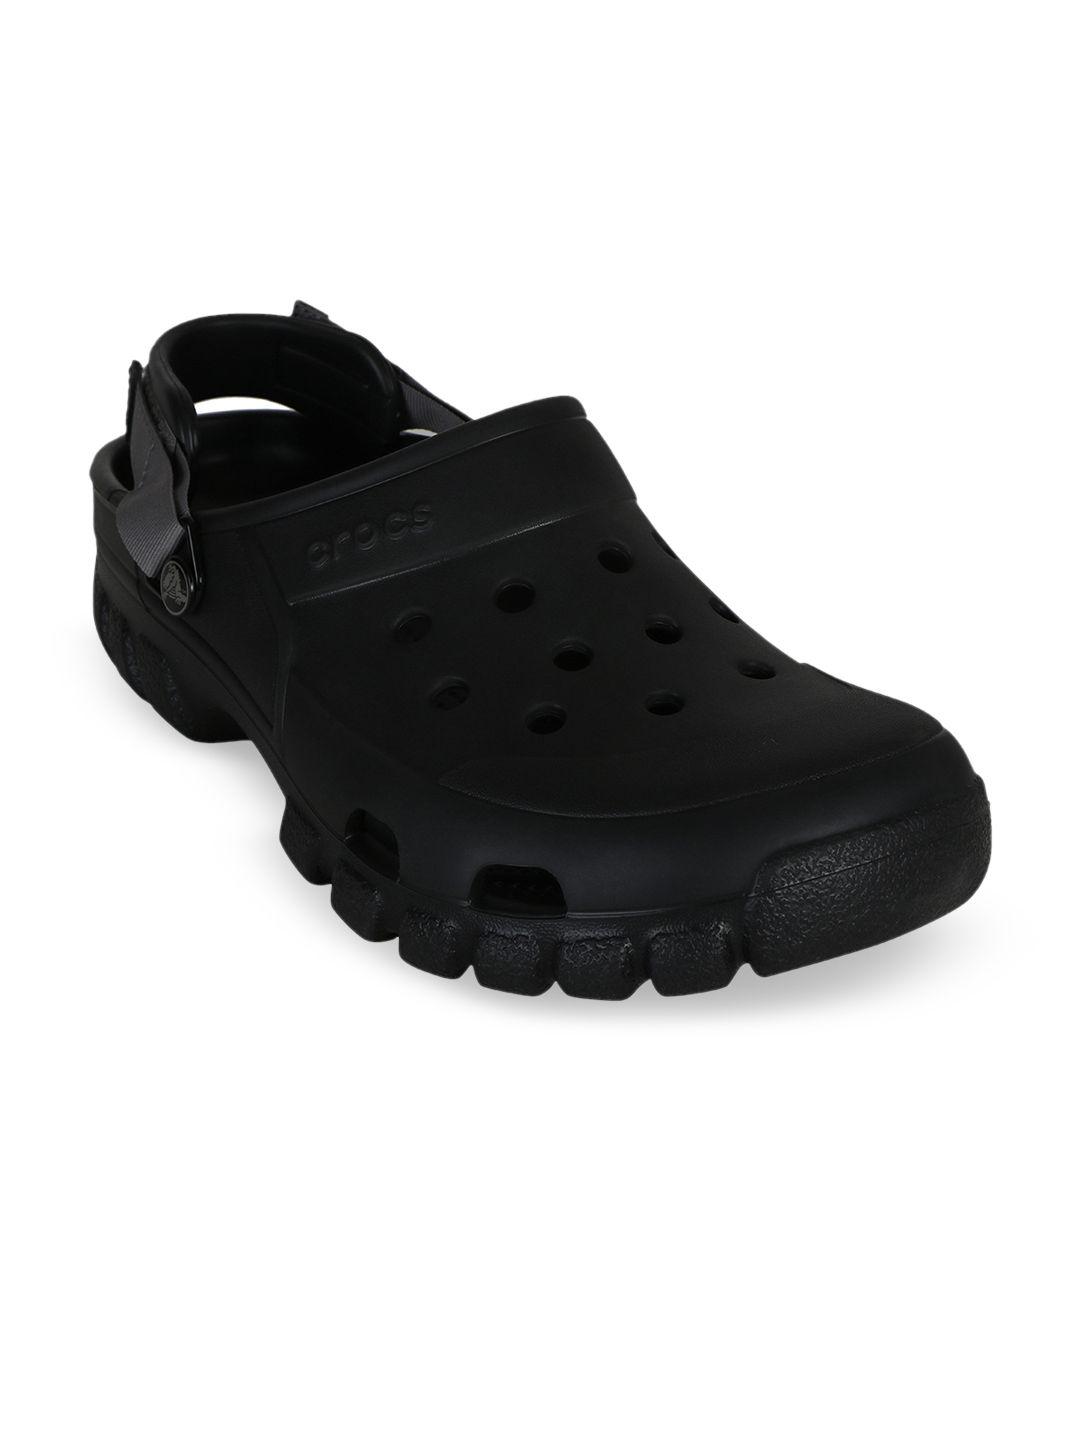 crocs unisex black offroad clogs